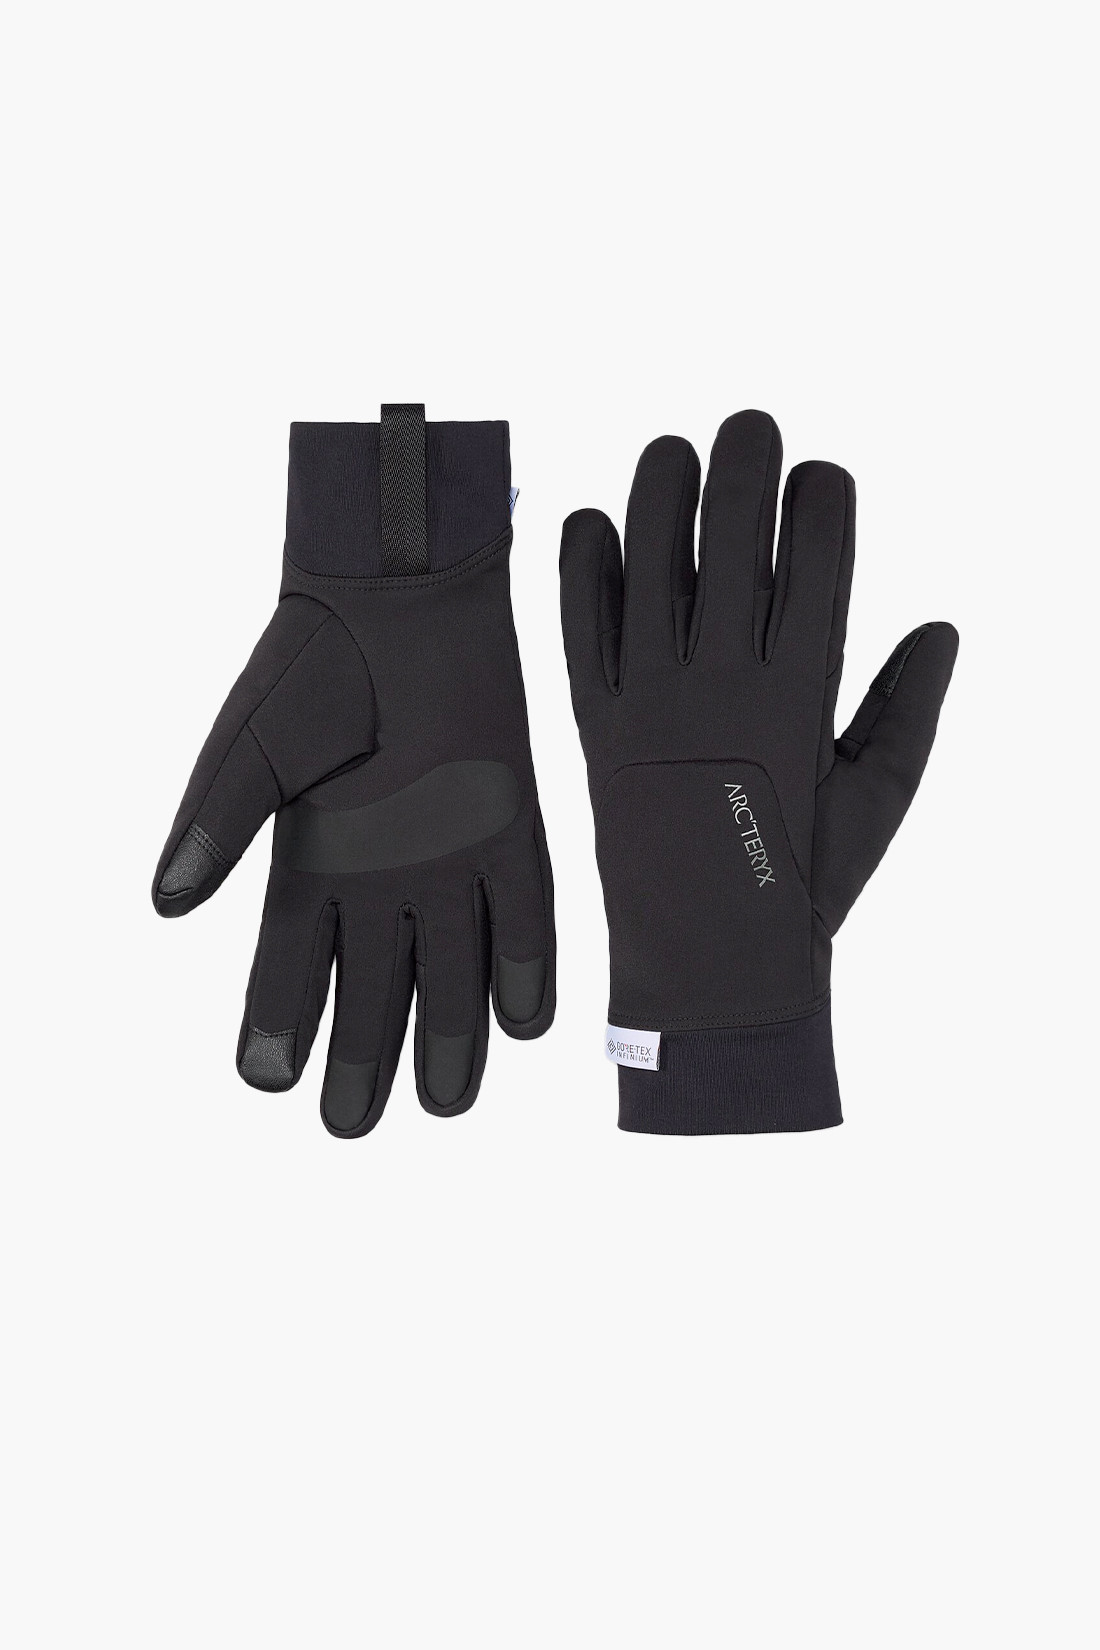 Venta glove Black